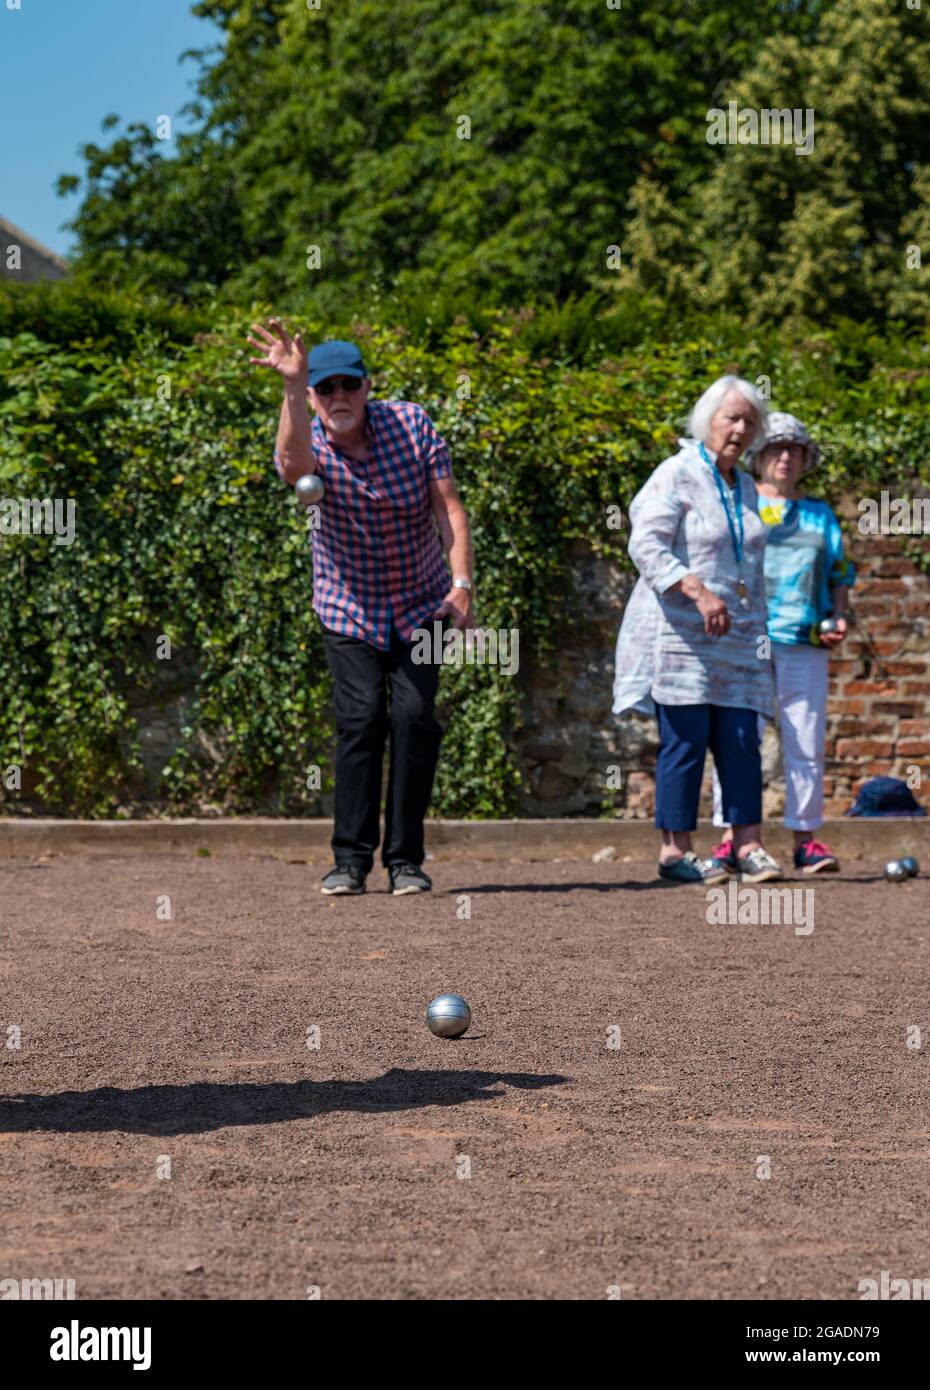 Personas mayores, mayores o pensionistas jugando petanca o petanca en el sol de verano, Haddington, East Lothian, Escocia, Reino Unido Foto de stock